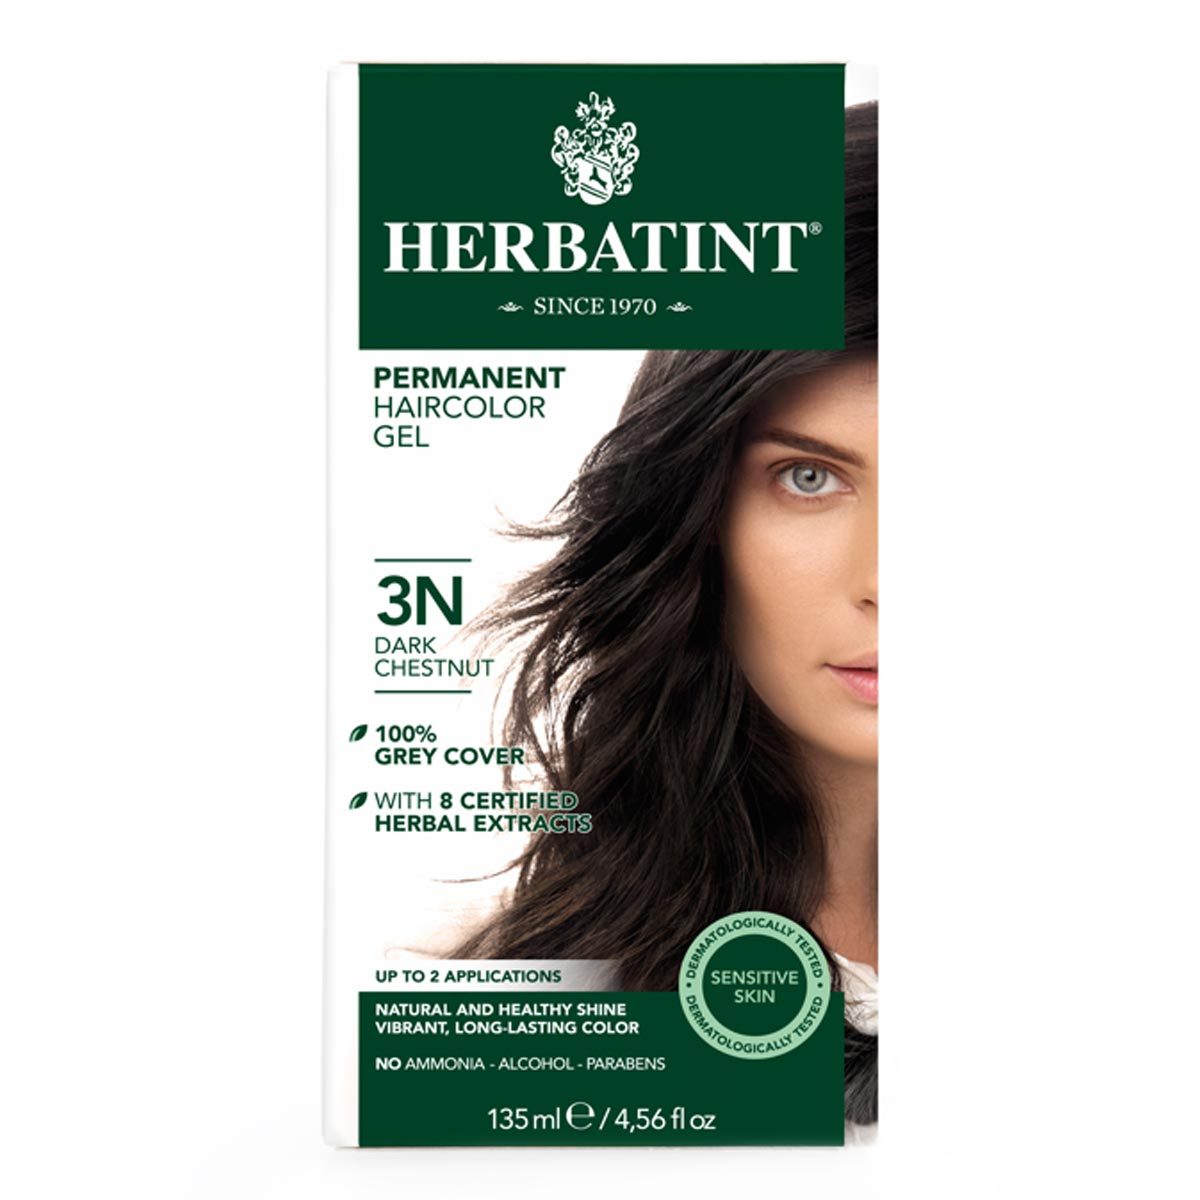 Primary image of 3N Dark Chestnut Permanent Hair Color Gel